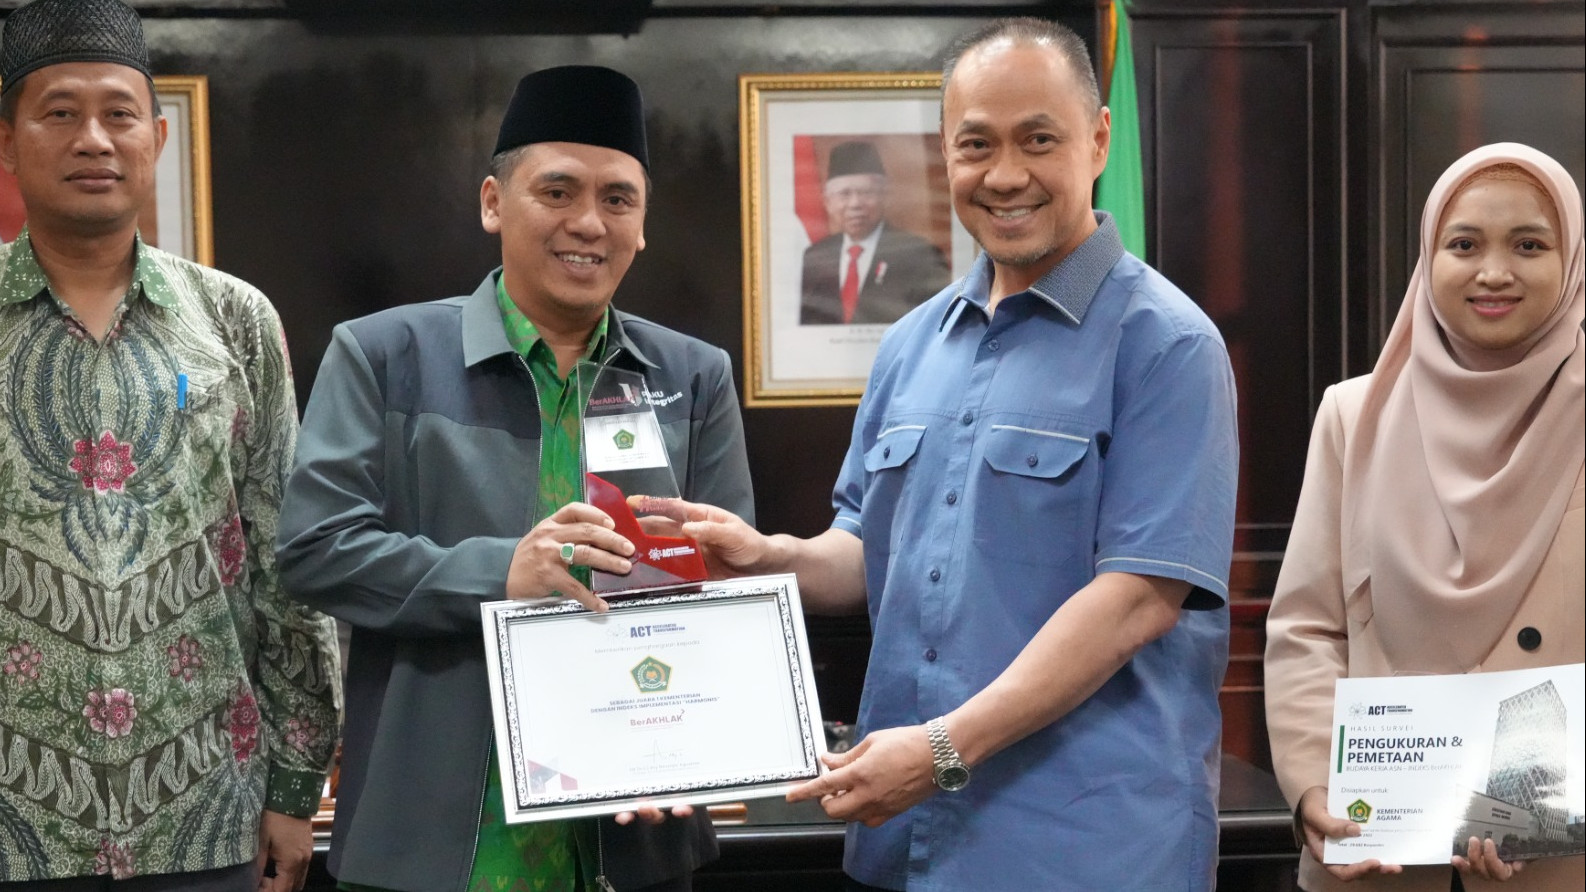 Founder ACT Consulting International Ary Ginanjar menyerahkan tropi penghargaan kepada Wamenag Saiful Rahmat Dasuki